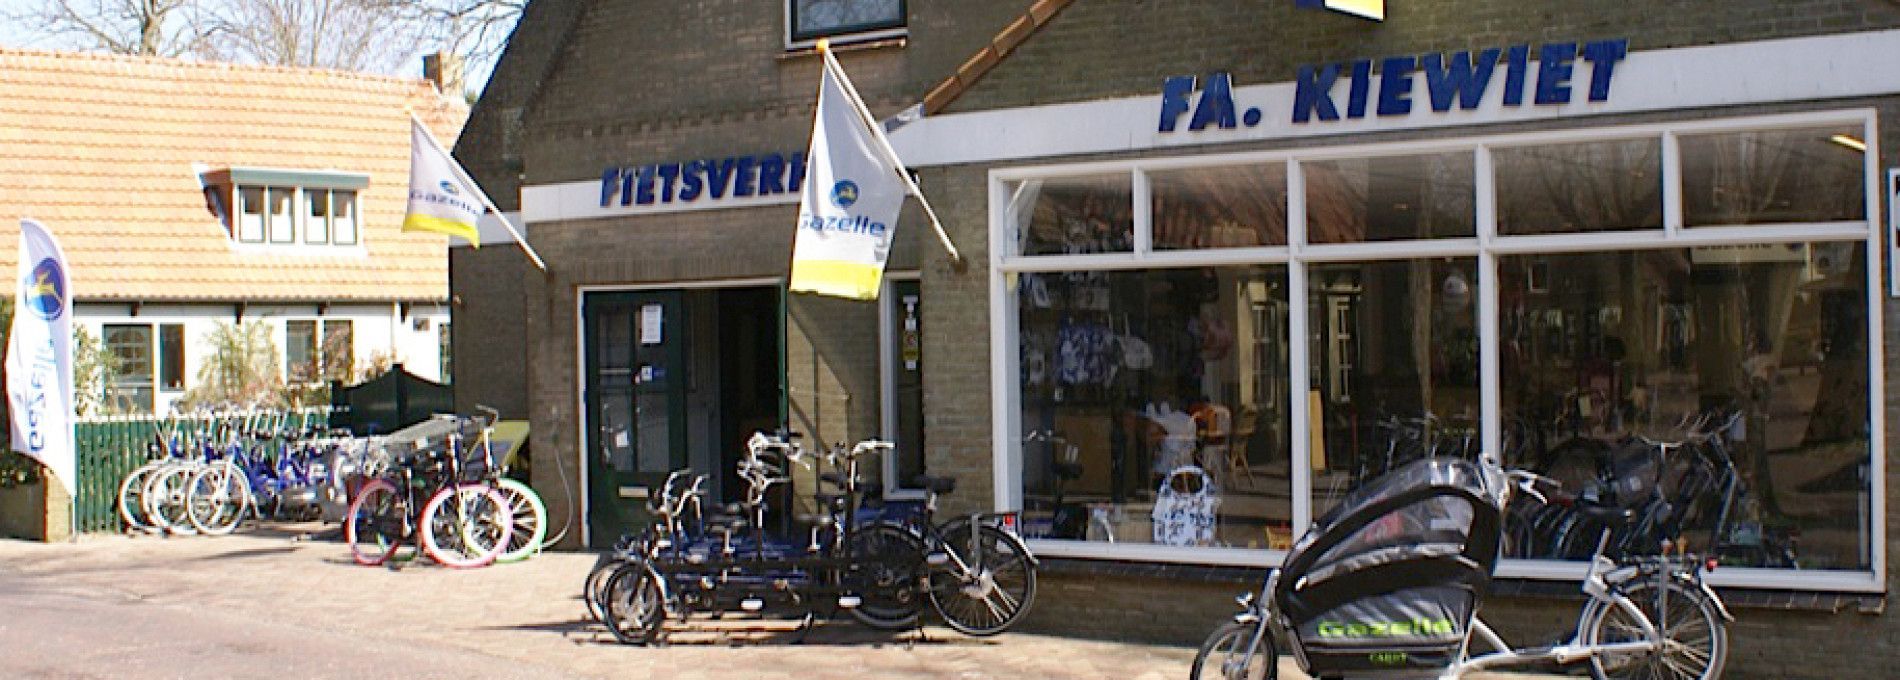 Fietswinkel Fietsverhuur Kiewiet - VVV Ameland